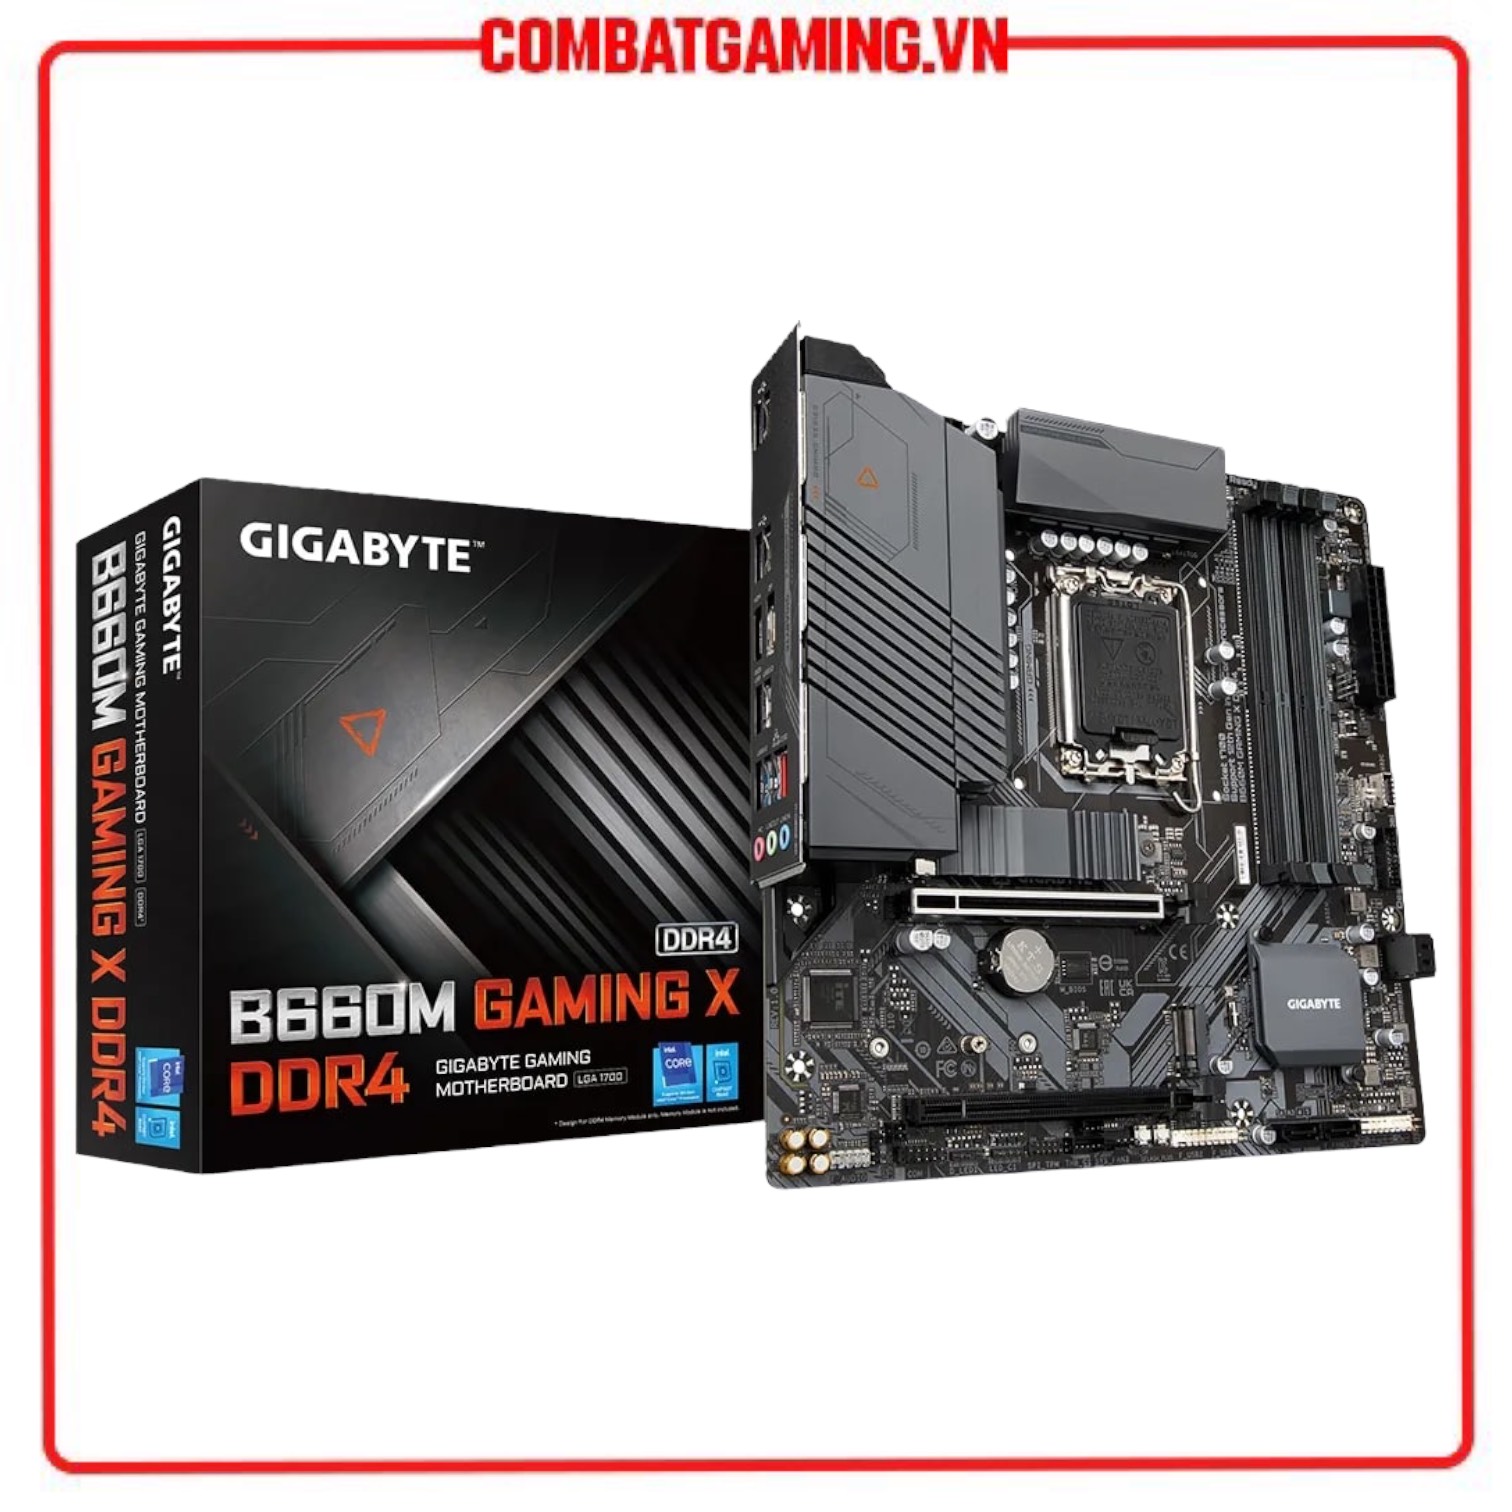 Bo Mạch Chủ Gigabyte B660M Gaming X DDR4 Hàng Chính Hãng